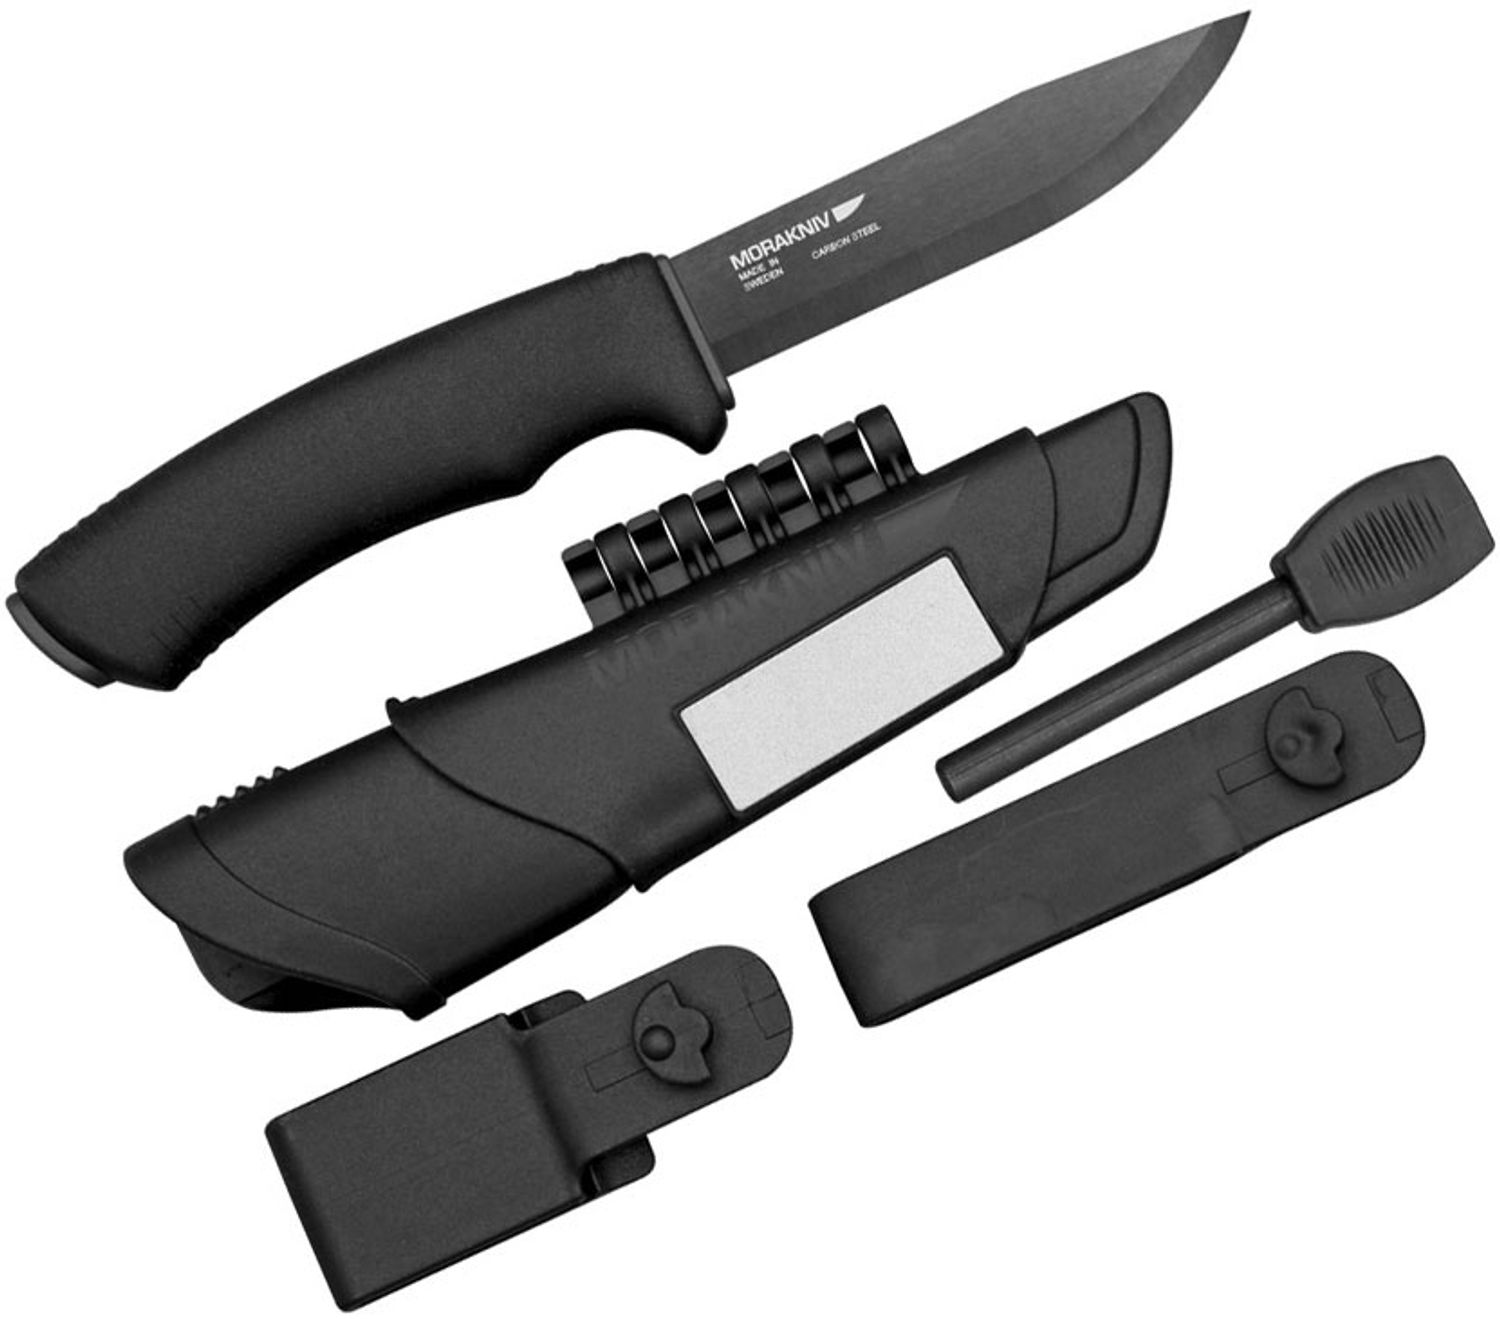 Morakniv Mora of Sweden Bushcraft Black Knife 4.3 Carbon Steel